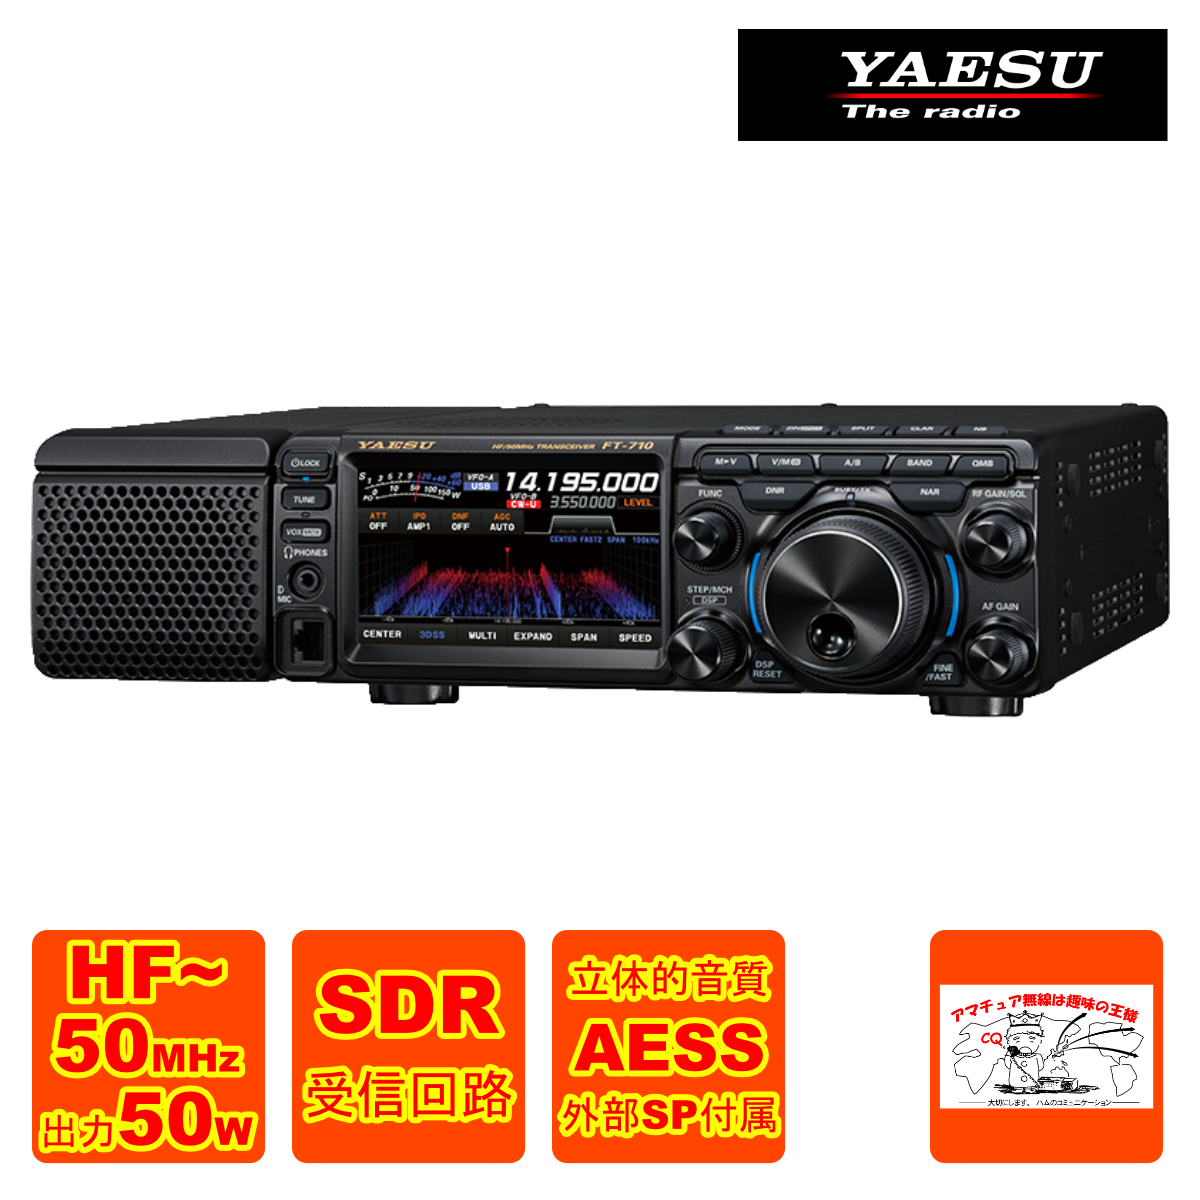  радиолюбительская связь FT-710M-AESS Yaesu беспроводной HF/50M Hz диапазон SDR приемопередатчик мощность 50W